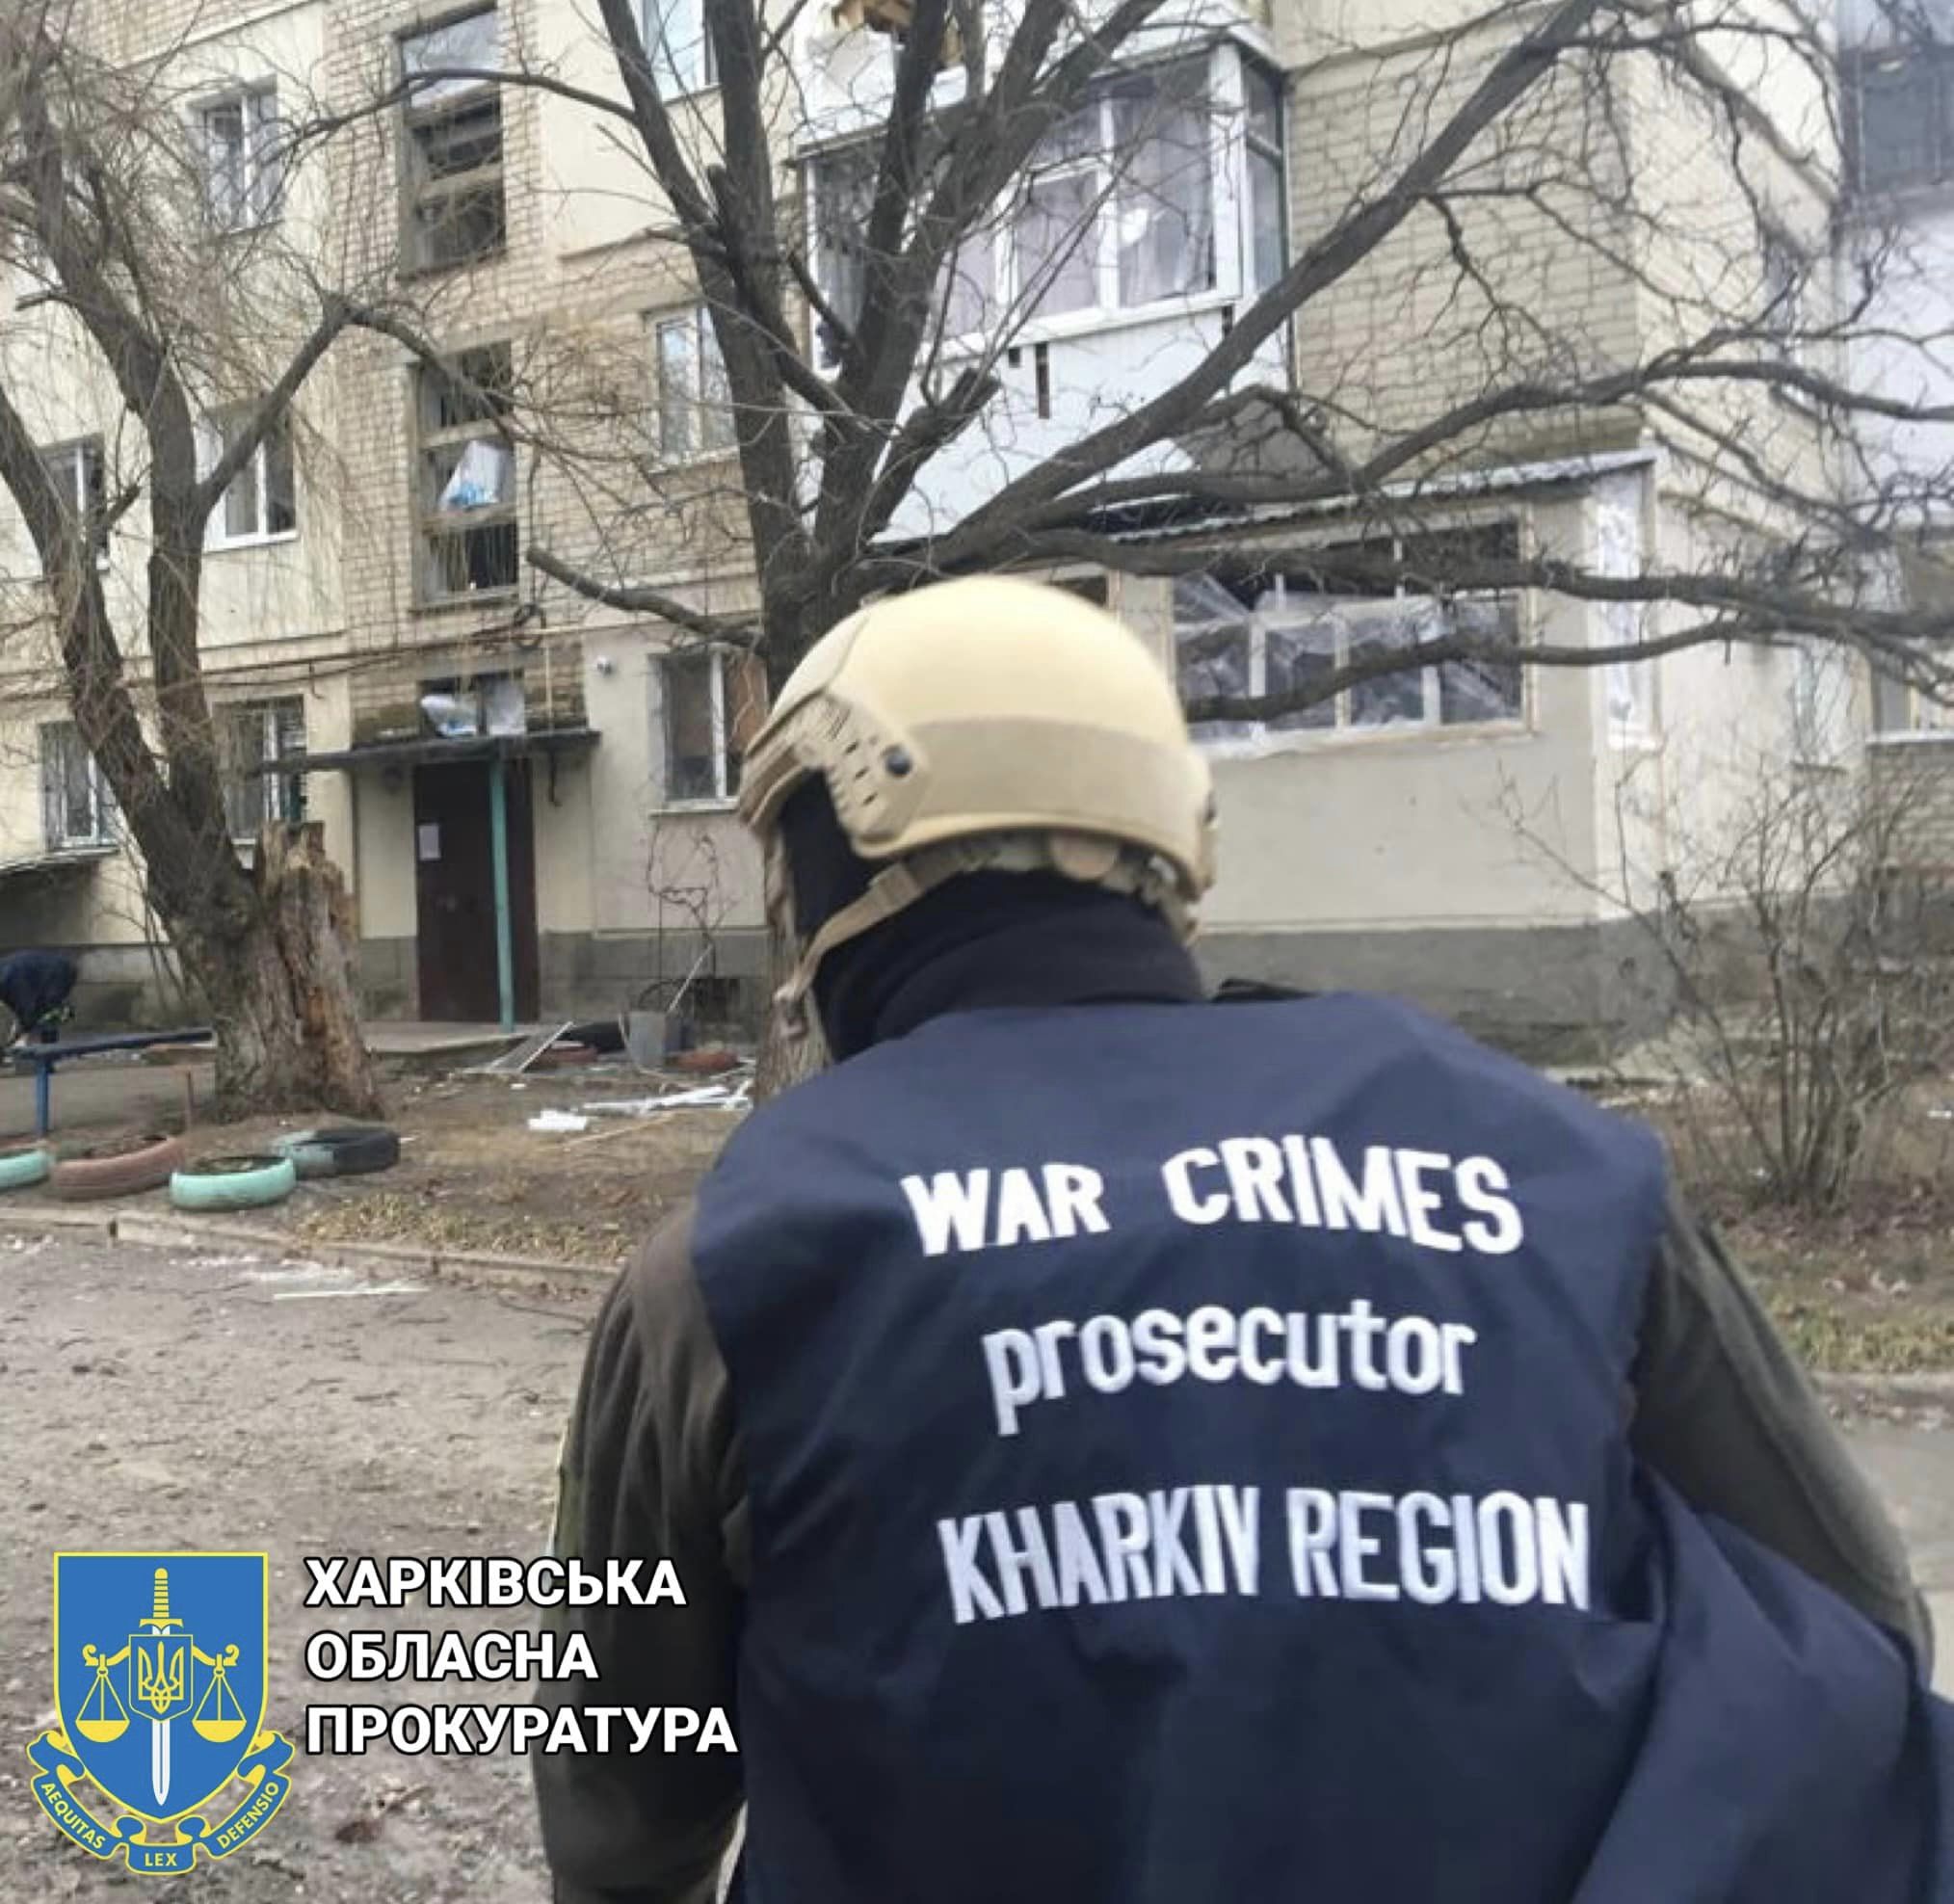 Наслідки обстрілу Харківської області